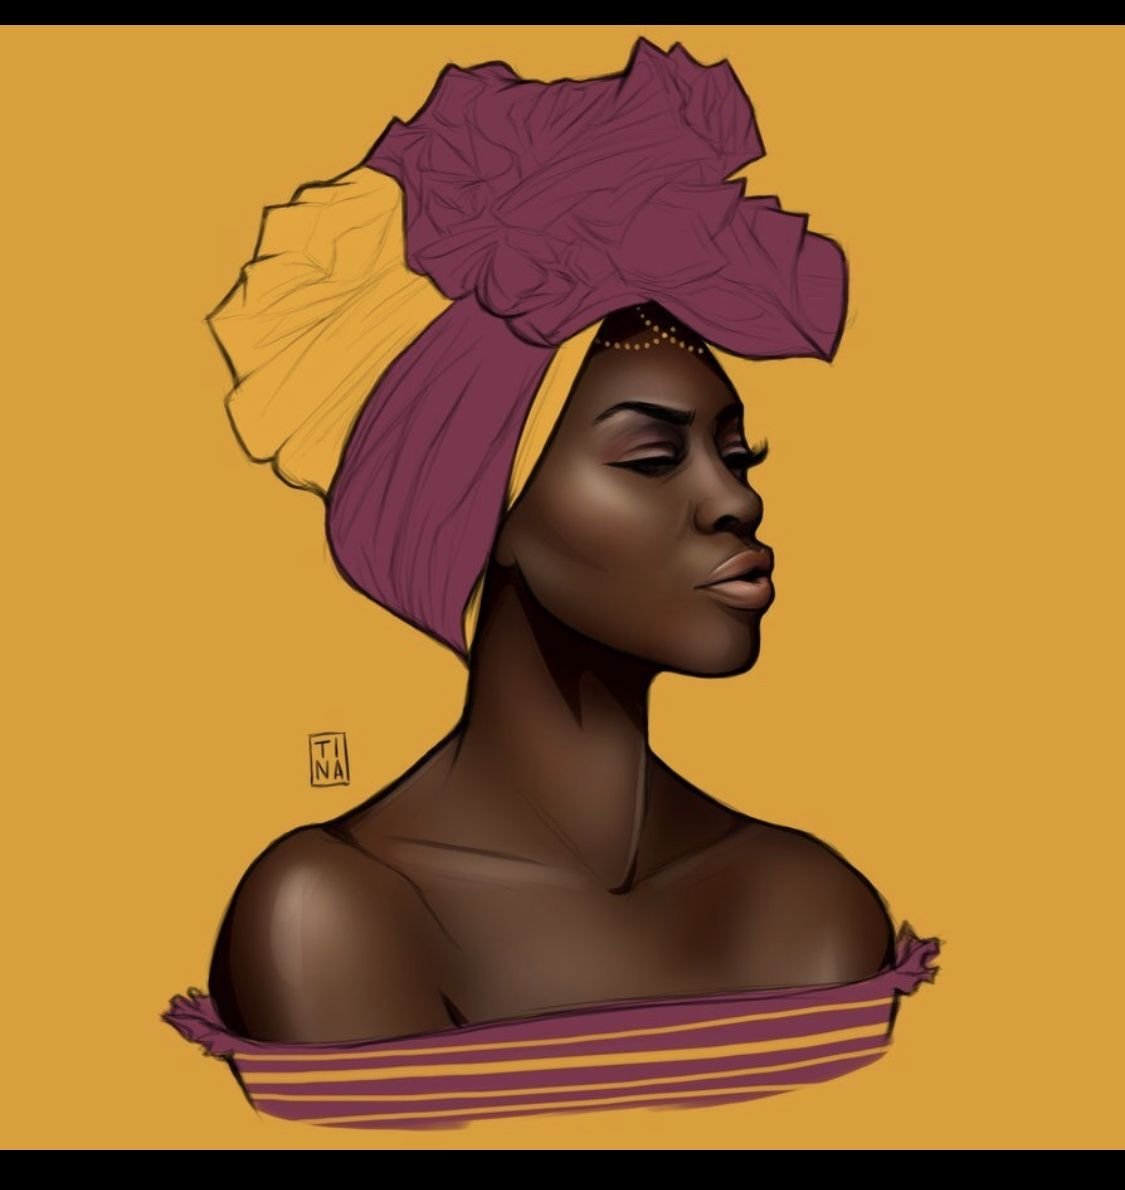 Негритянка г. Портрет негритянки. Темнокожая женщина арт. Афроамериканки арт. Портрет афроамериканки.